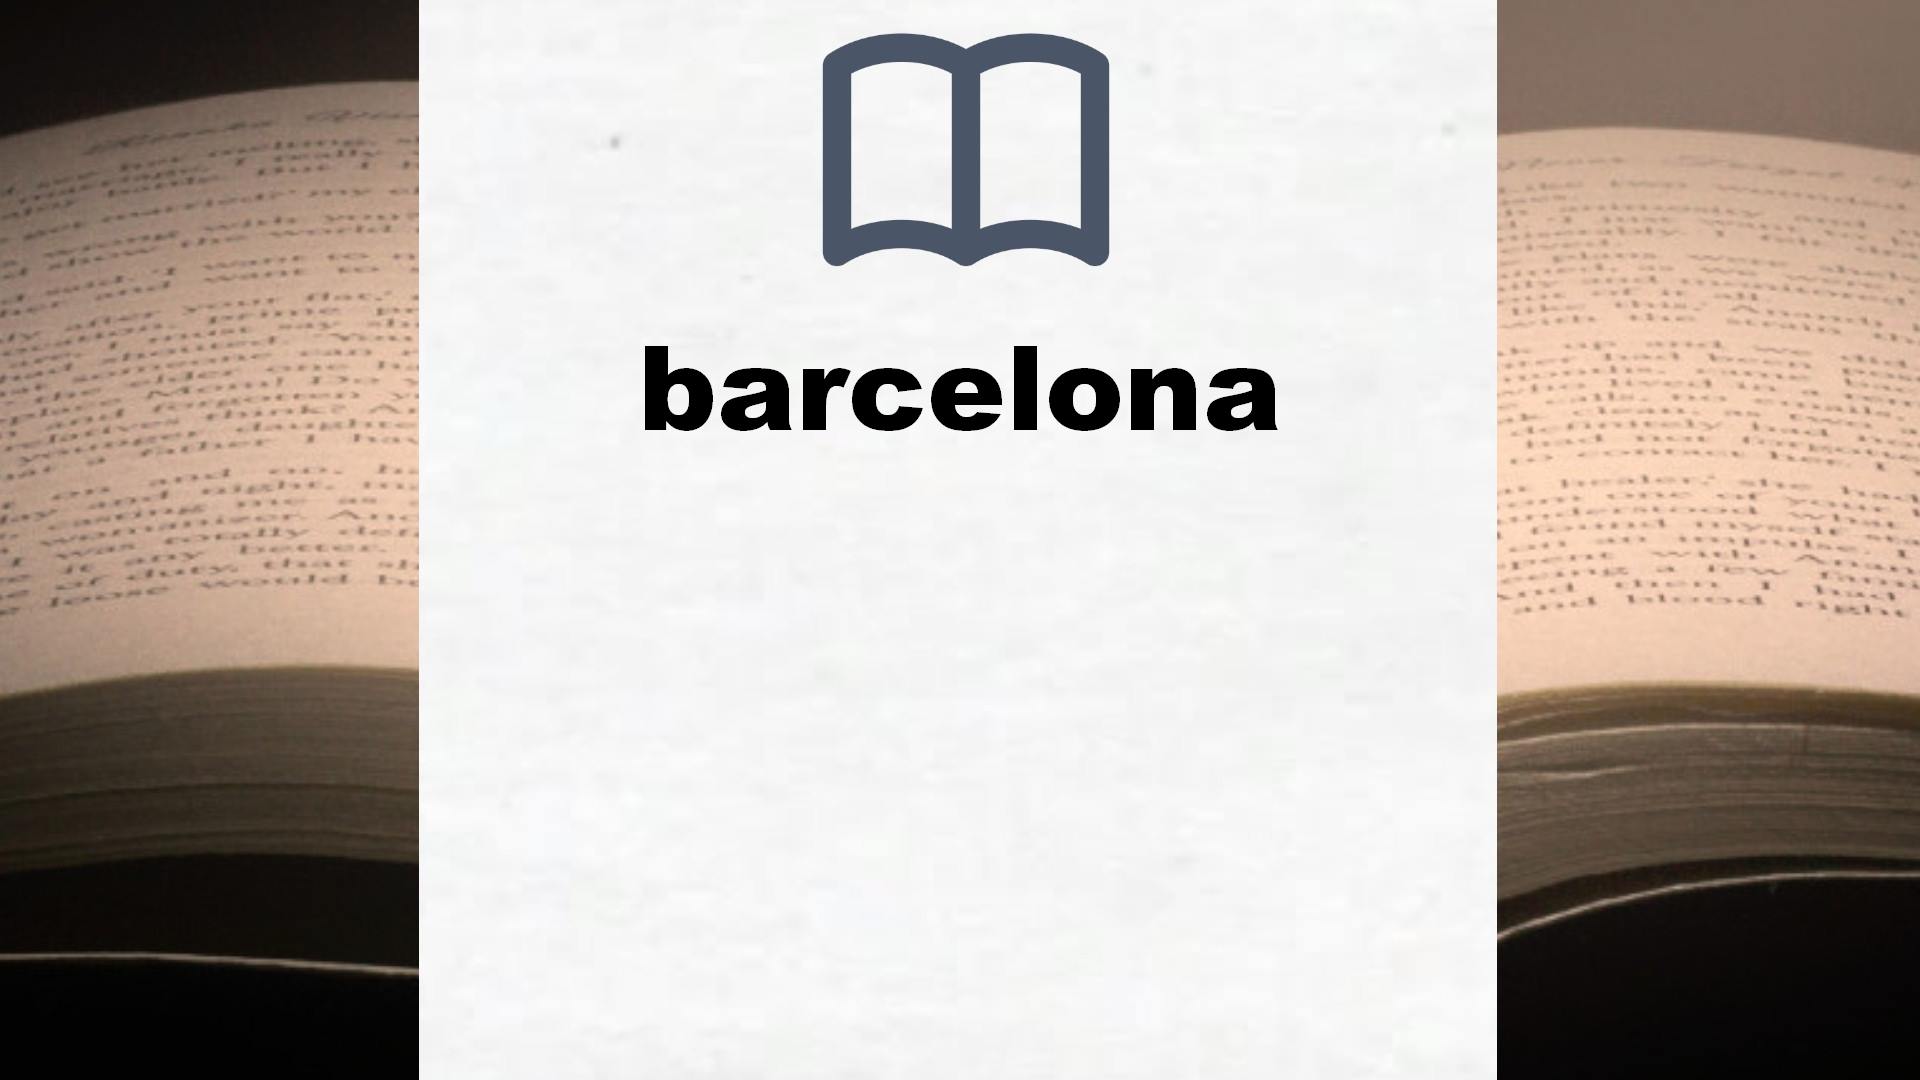 Libros sobre barcelona